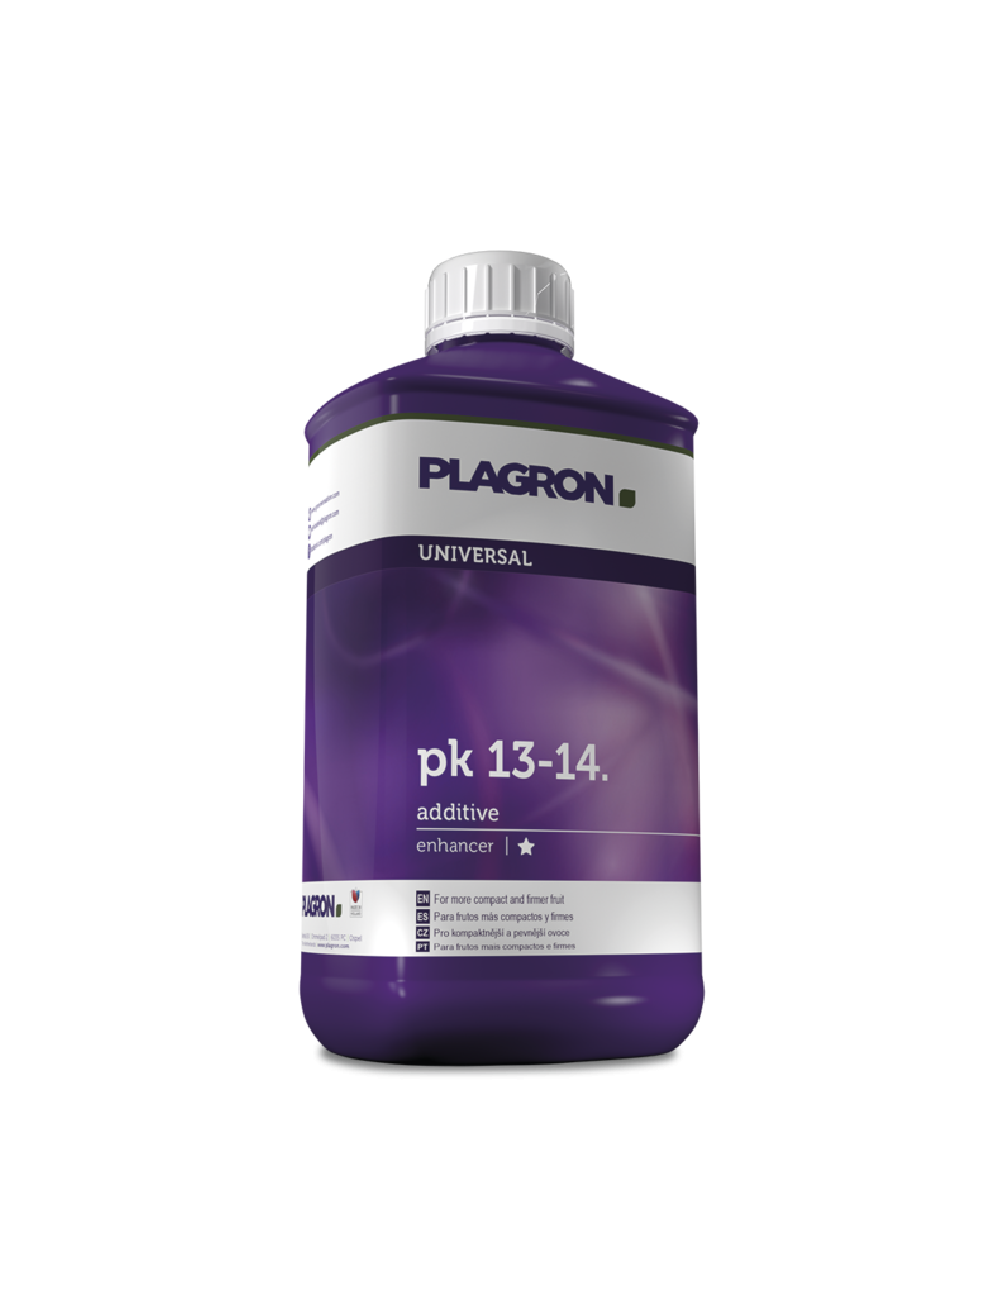 Plagron PK 13-14 - 1 liter